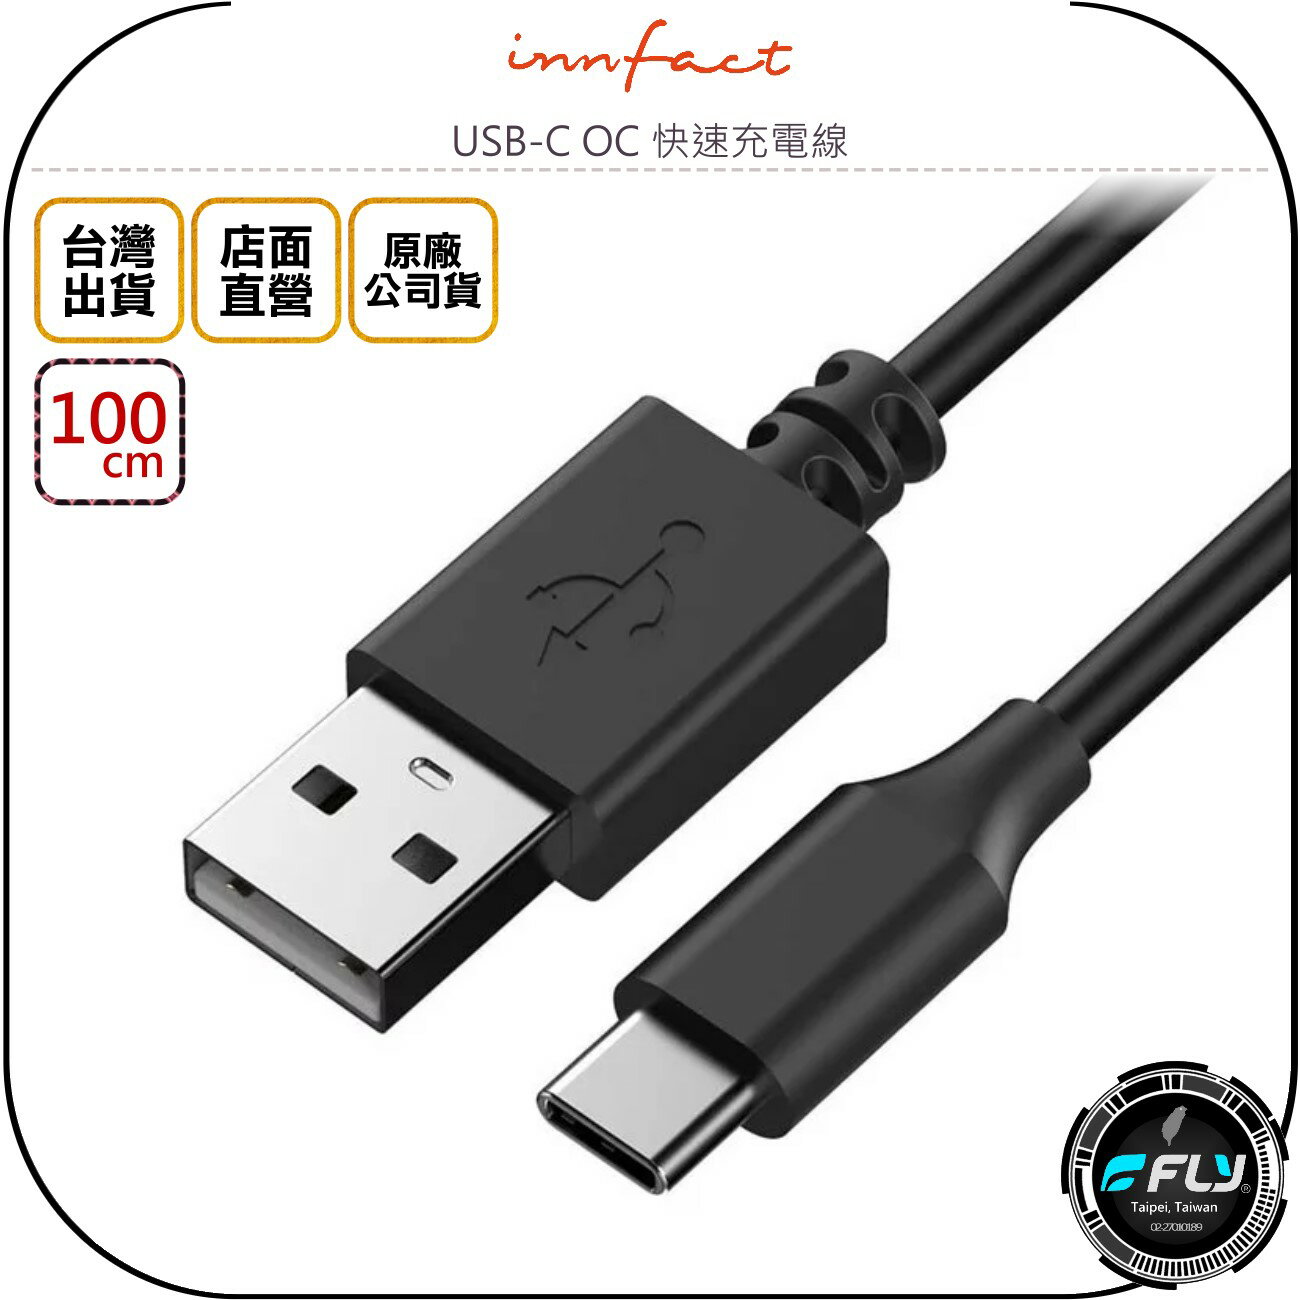 《飛翔無線3C》Innfact USB-C OC 快速充電線 100cm◉公司貨◉TYPE-C 安卓充電◉USB傳輸